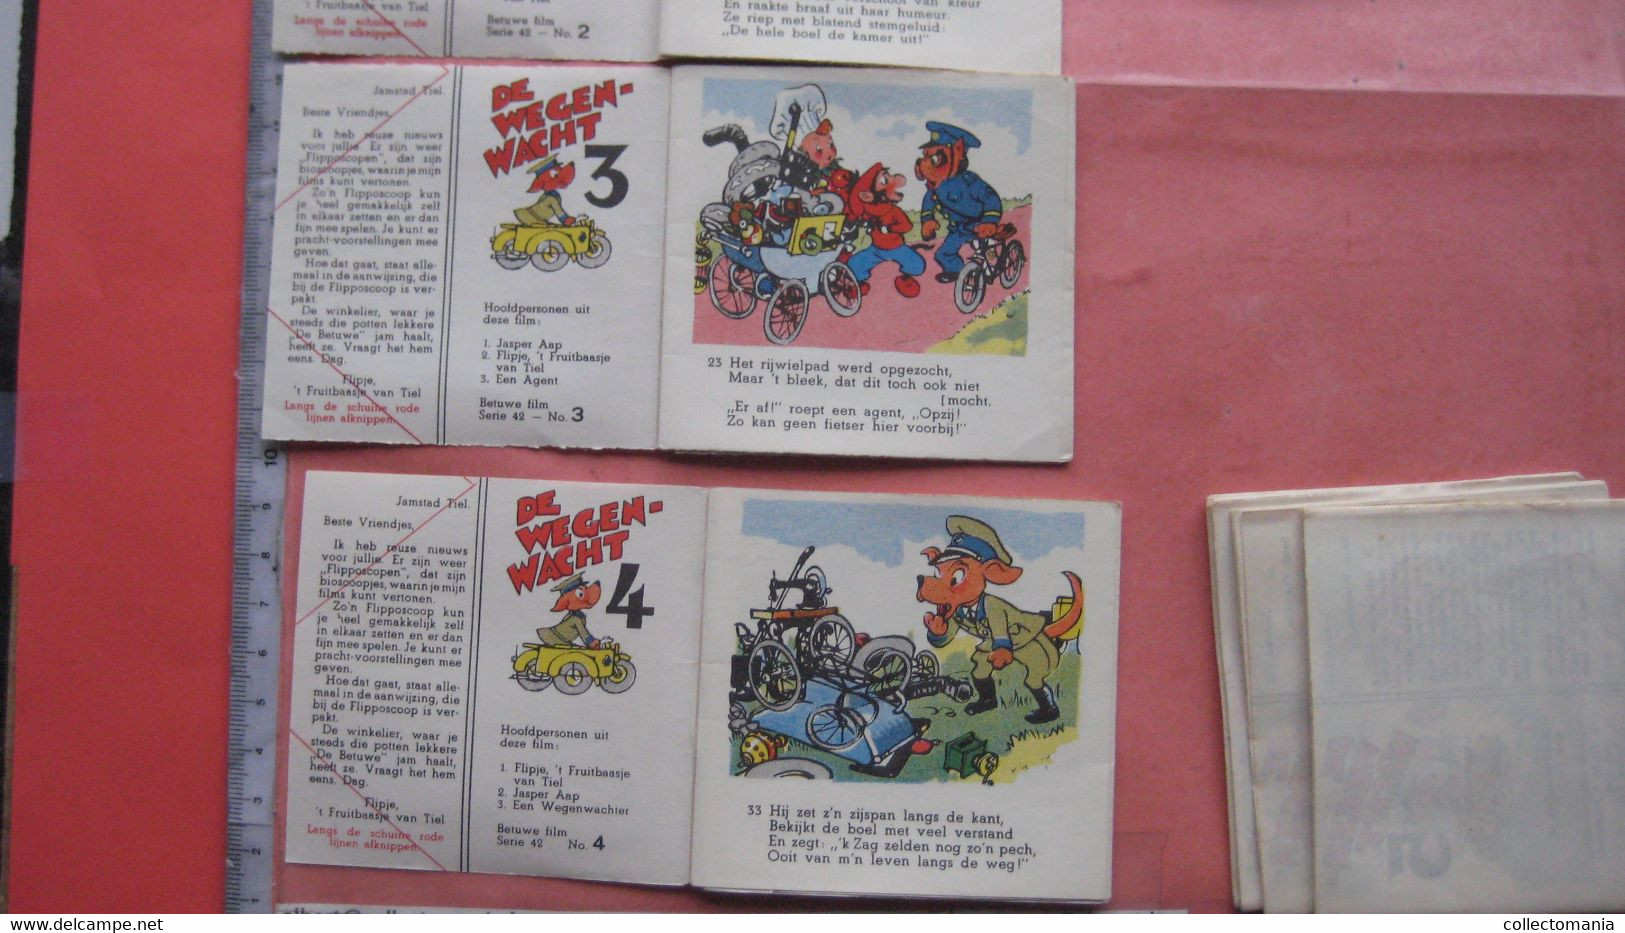 1952 Flipje, FRUITBAASJE de BETUWE, 4 kompl. series = 8 stroken in elk, voor kinderbioskoop FLIPPOSCOOP,  Prima staat